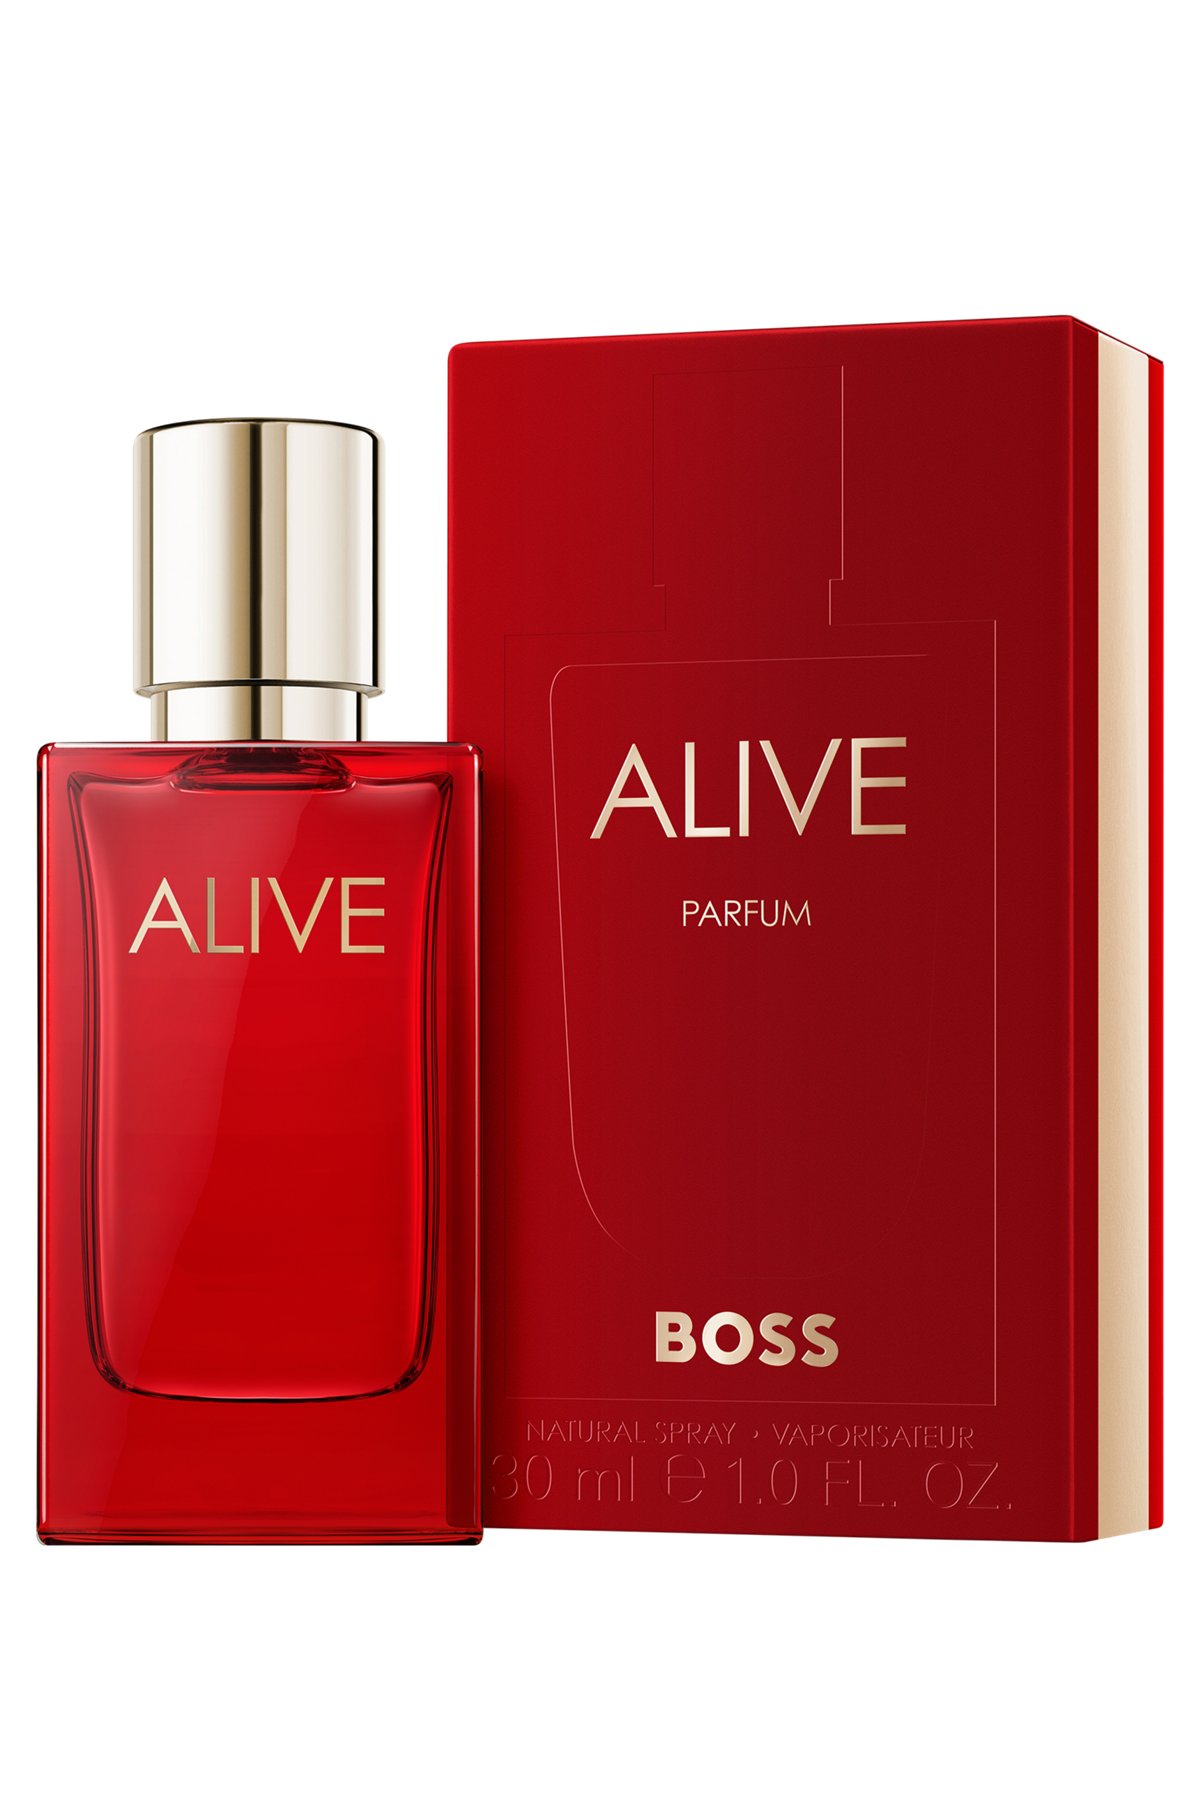 BOSS Alive eau de parfum 30 ml, Assorted-Pre-Pack